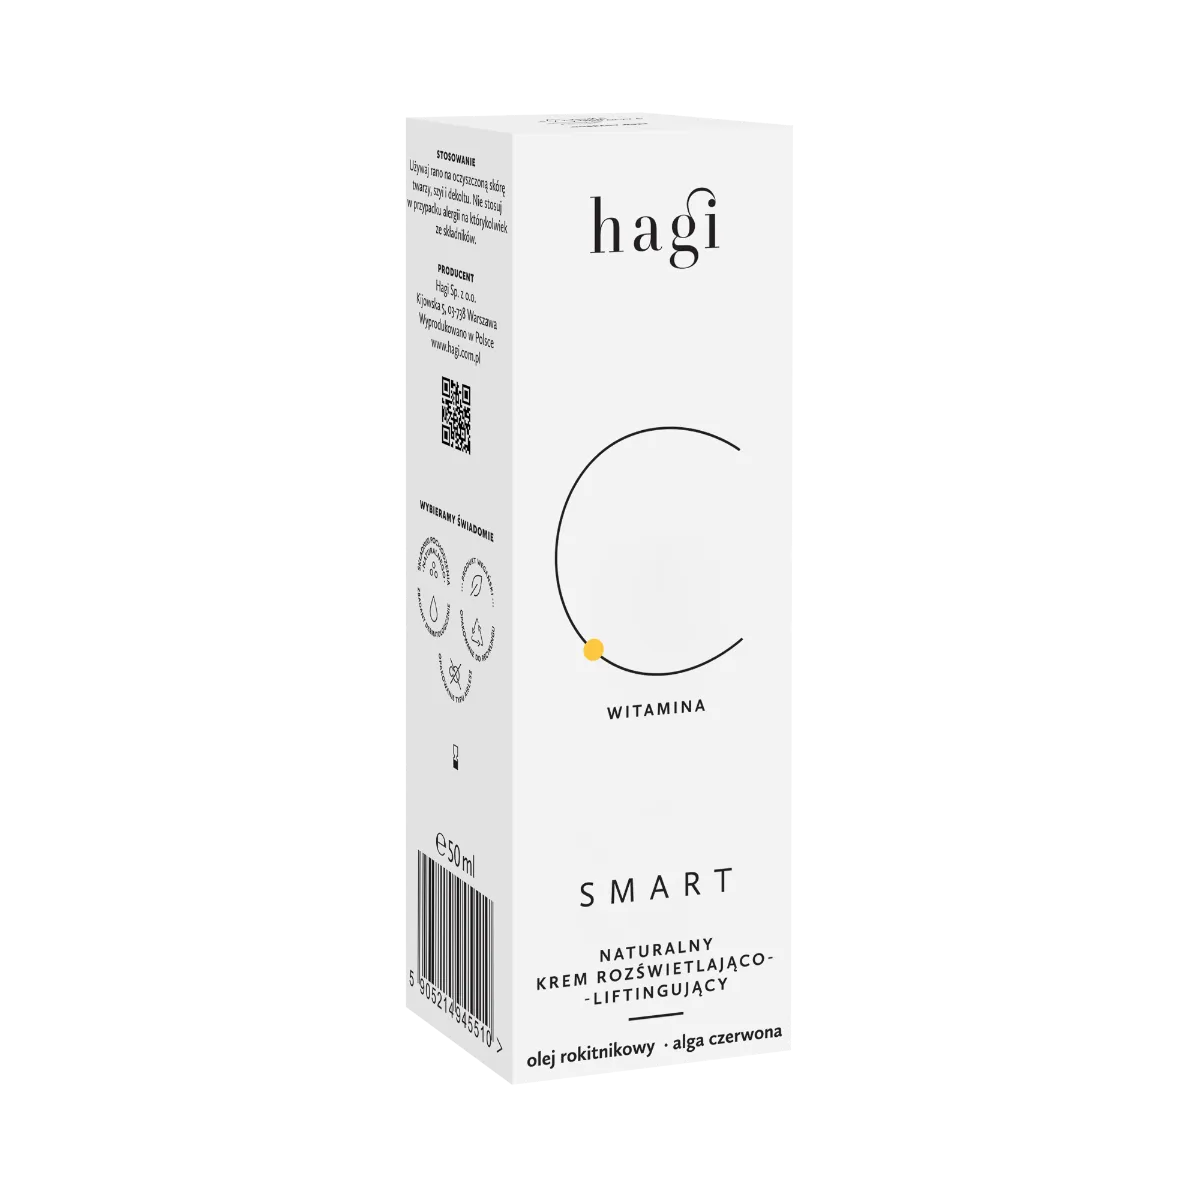 Hagi Smart C naturalny krem rozświetlająco-liftingujący z witaminą C, 50 ml 